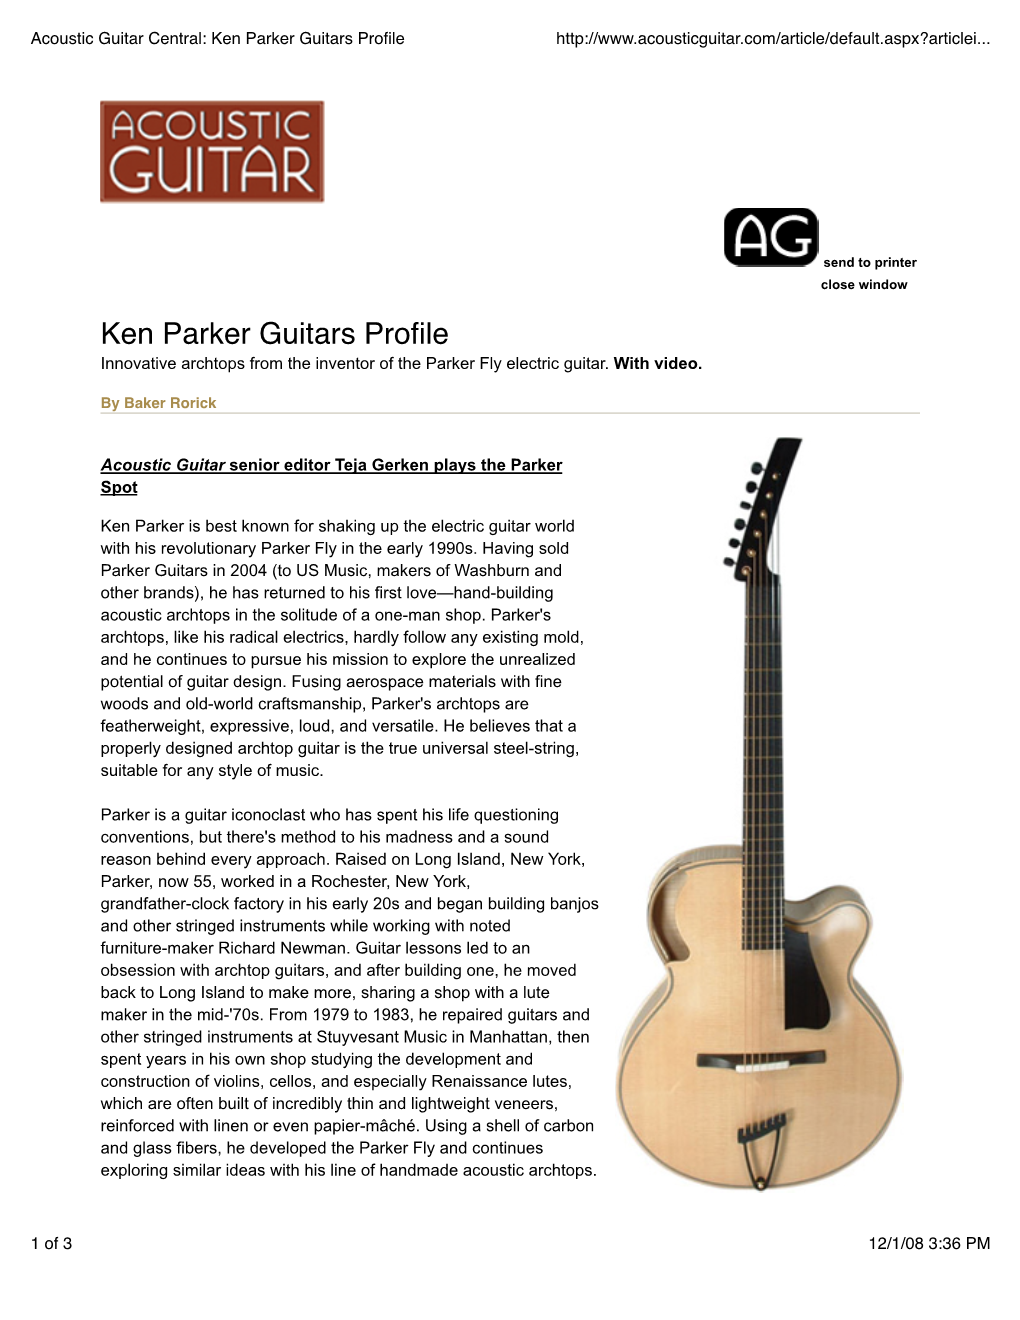 Acoustic Guitar Central Ken Parker Guitars Profile